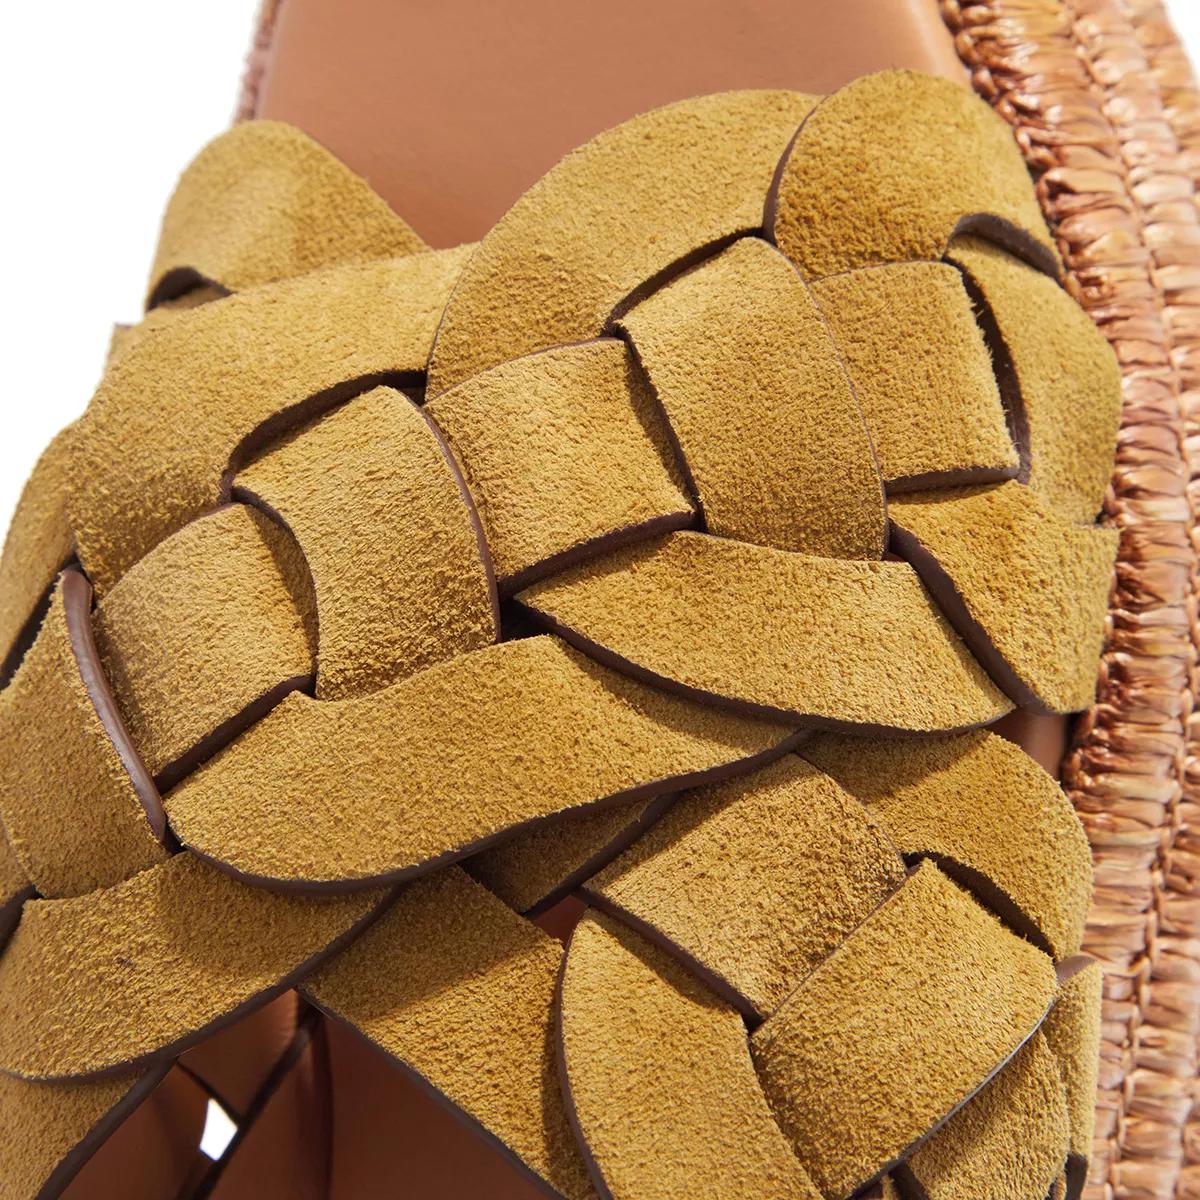 Tod's Loafers & Ballerinas - Loafers Leather - Gr. 37,5 (EU) - in Braun - für Damen von TOD'S